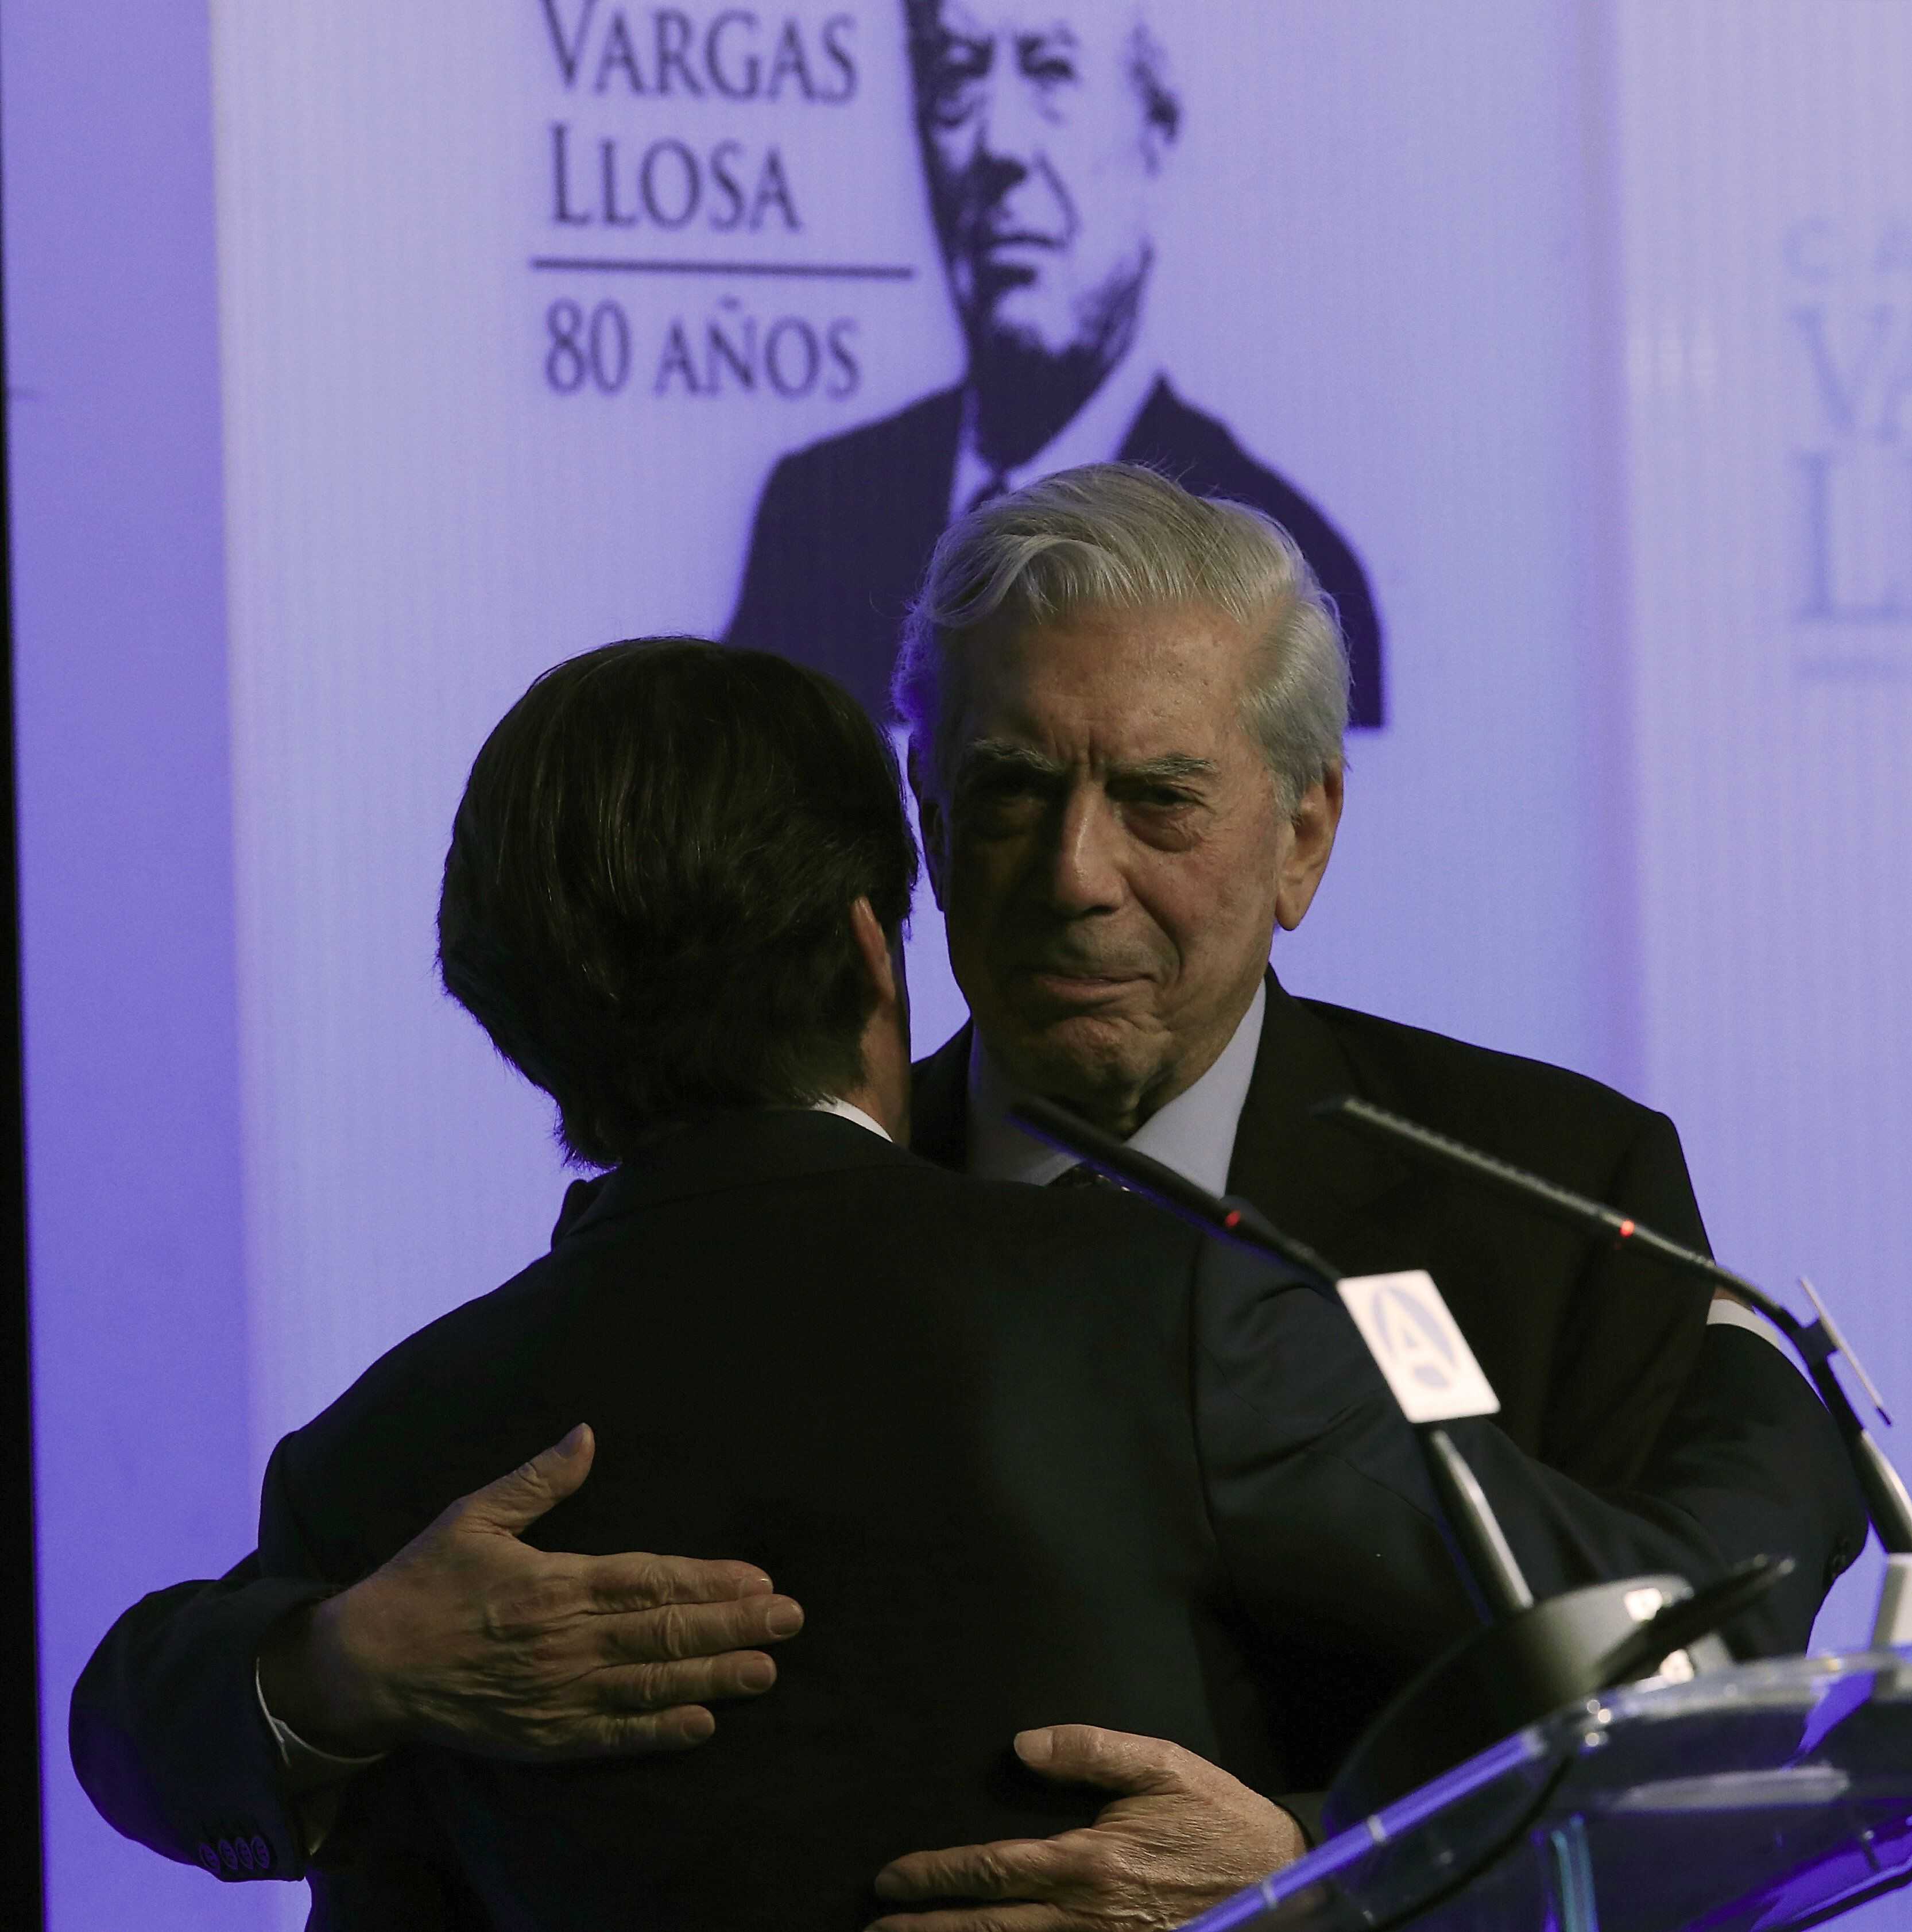 Vargas Llosa disolvió su 'offshore' antes de recibir el Nobel